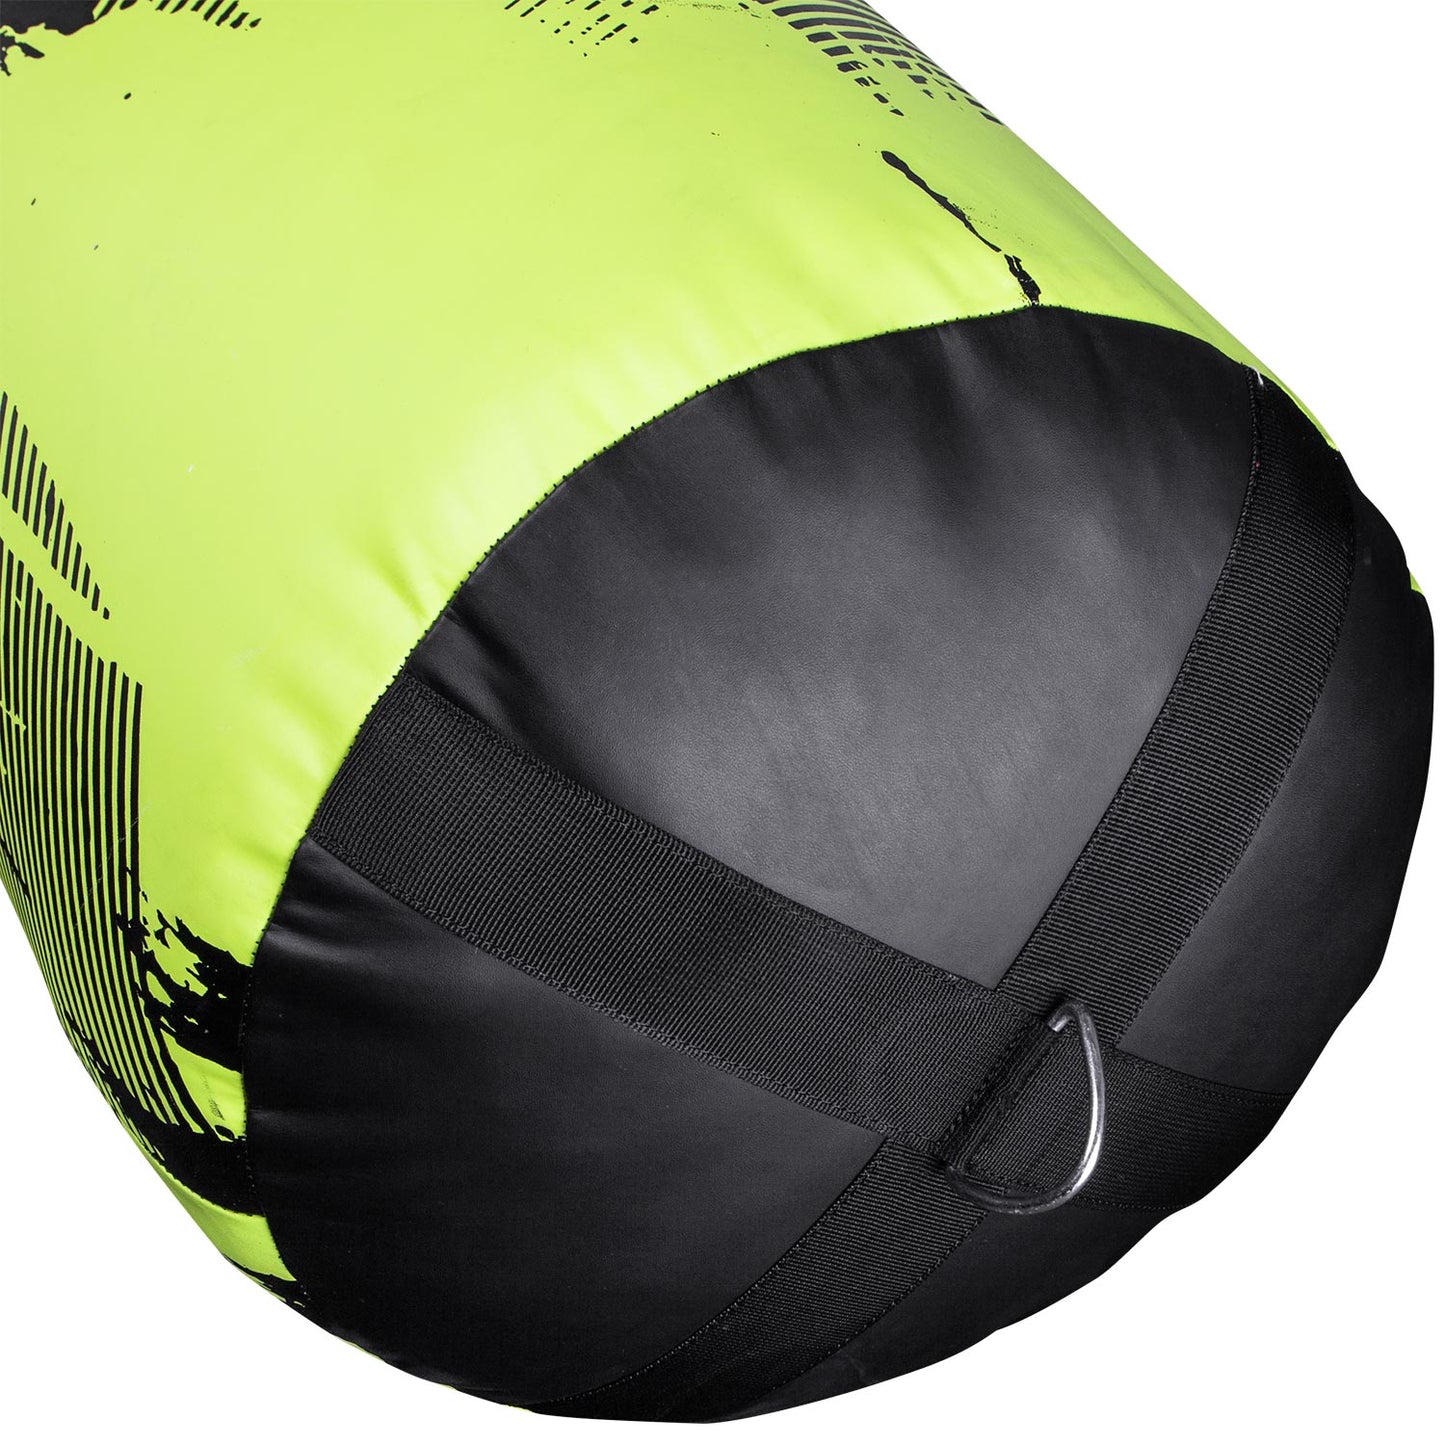 Venum Hurricane Punching Bag - Neo Yellow/Black - 150 cm